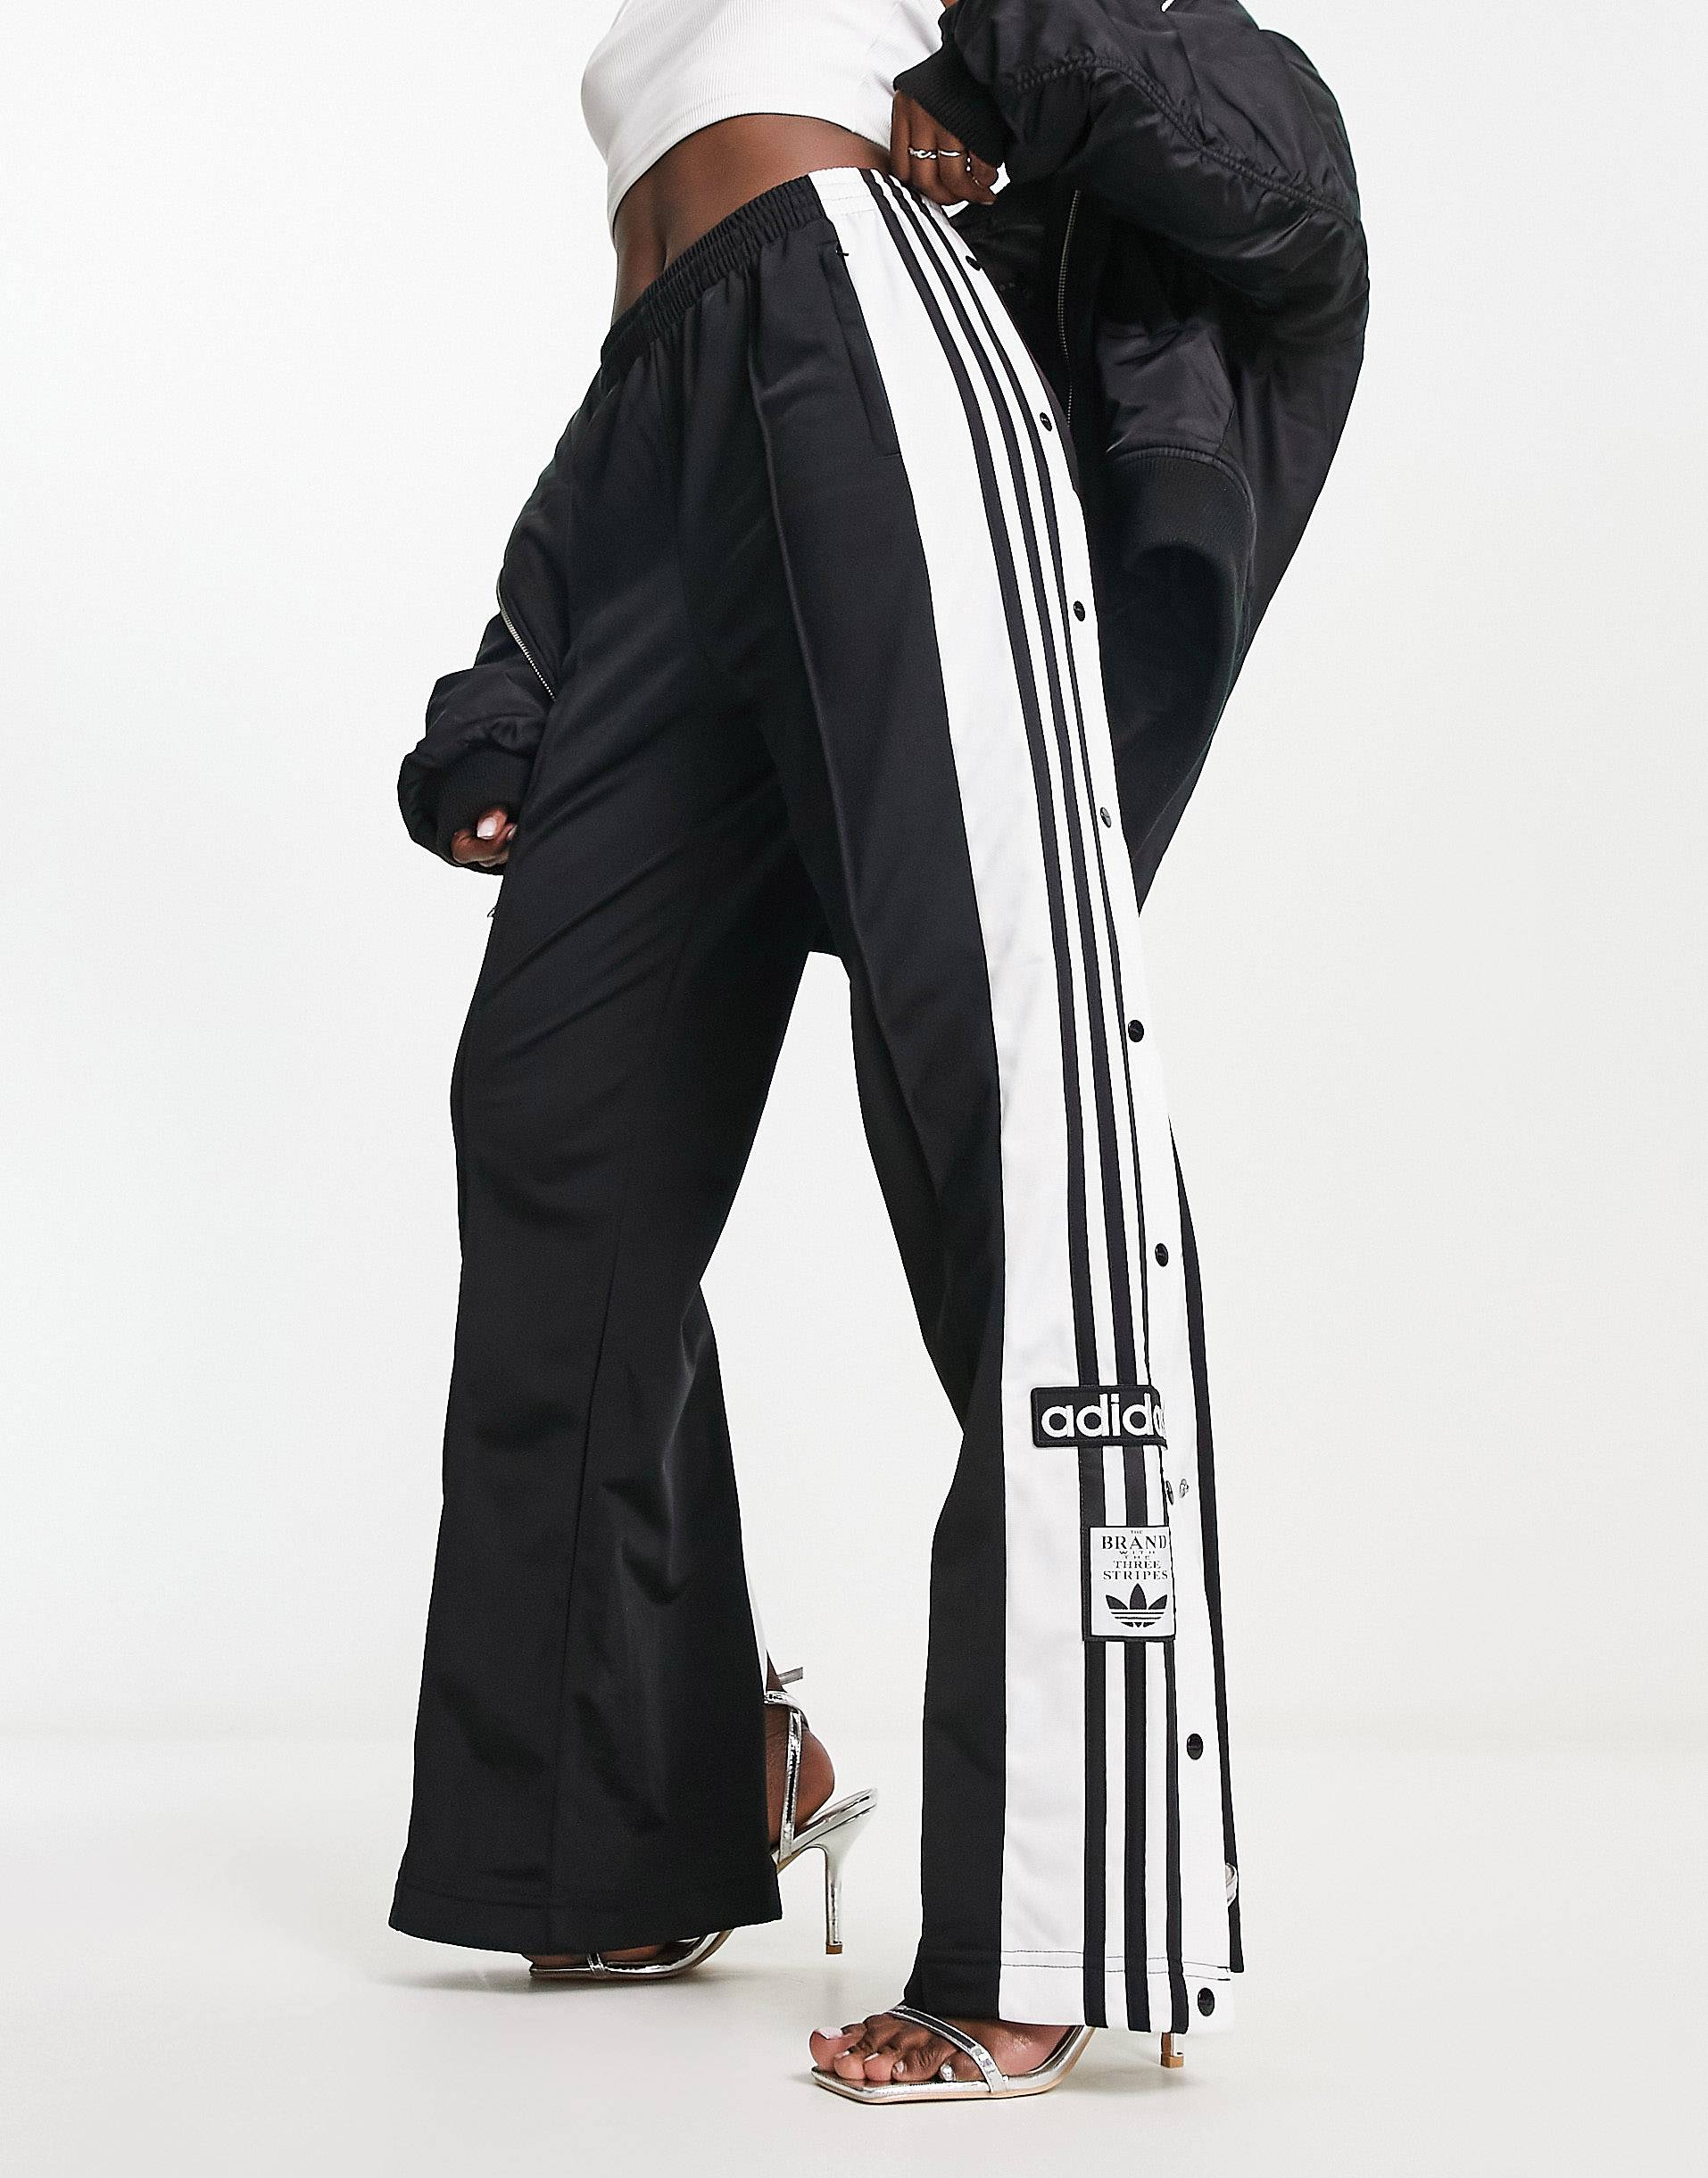 Черные спортивные брюки с кнопками по бокам adidas Originals adibreak –заказать по доступной цене из-за рубежа в «CDEK.Shopping»